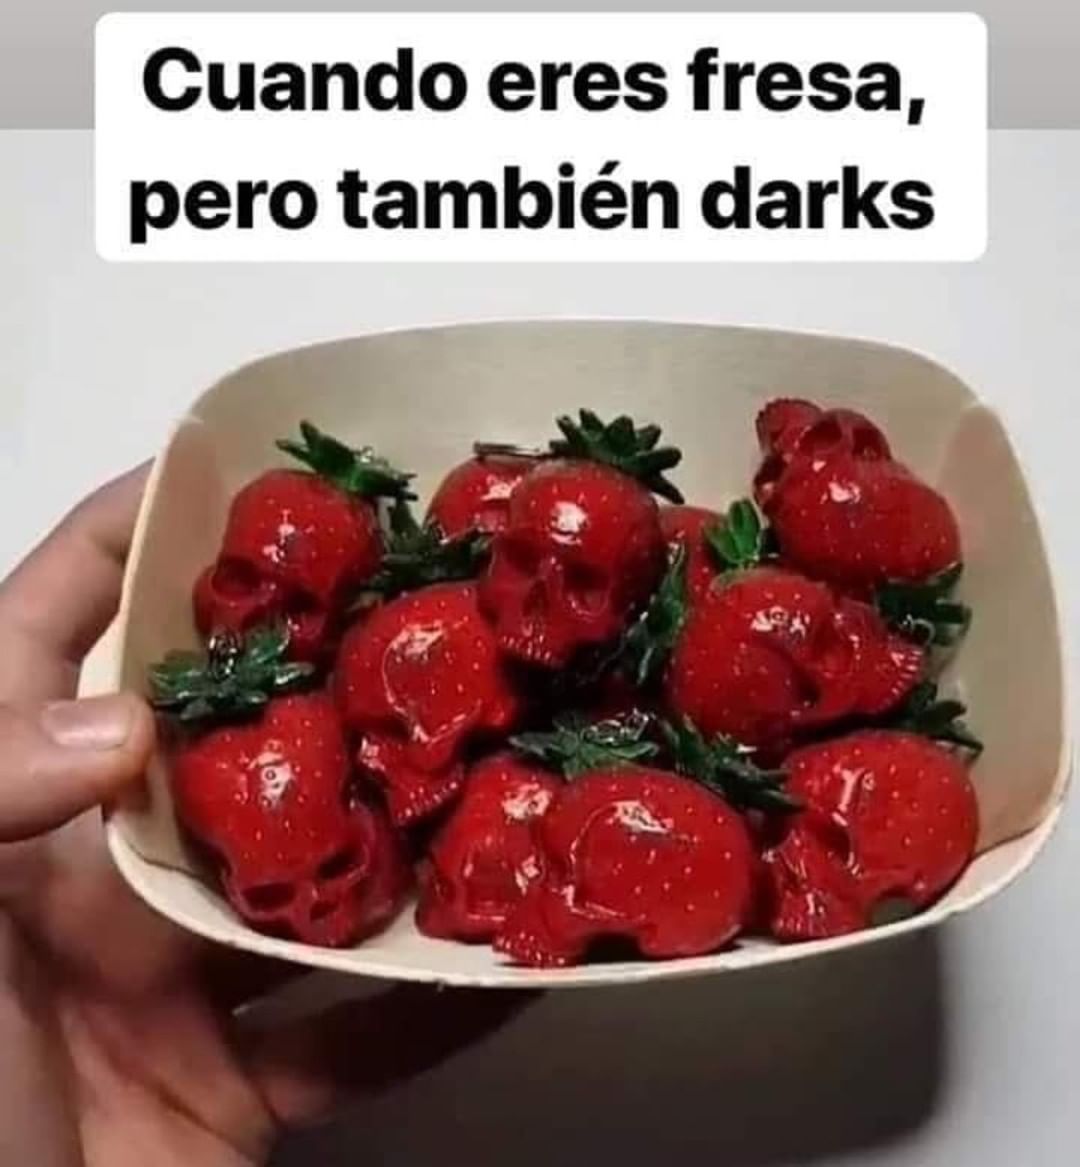 Cuando eres fresa, pero también darks.